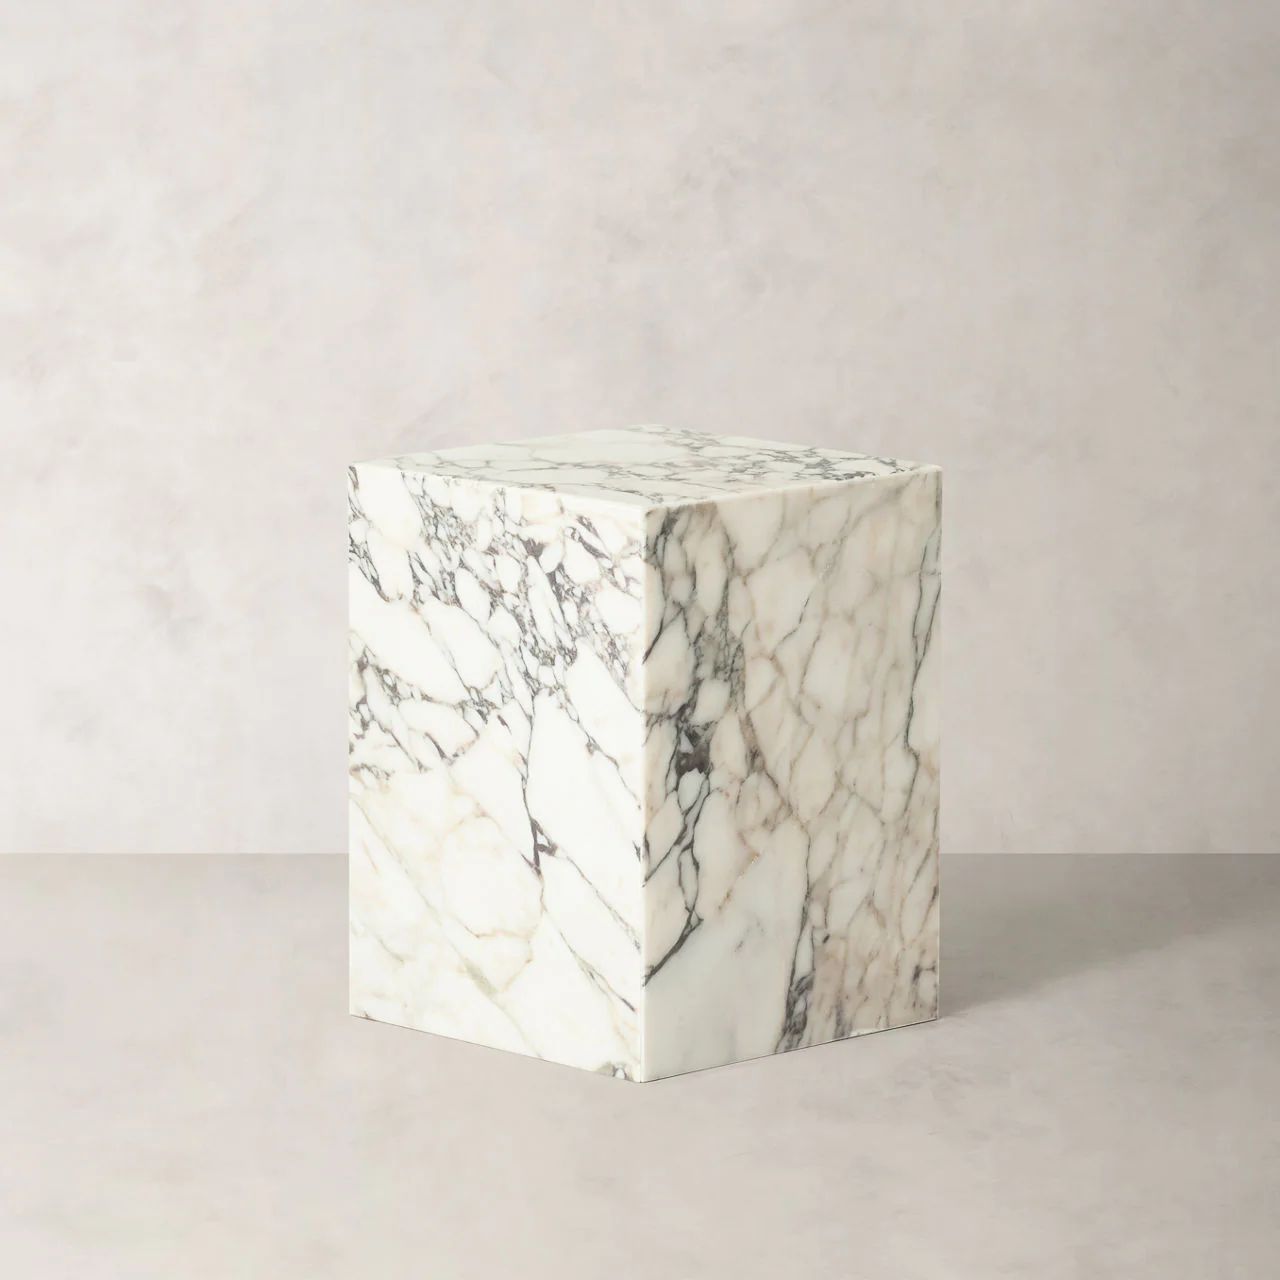 Zuri Calcutta Marble Side Table - 6002922 | BR Home